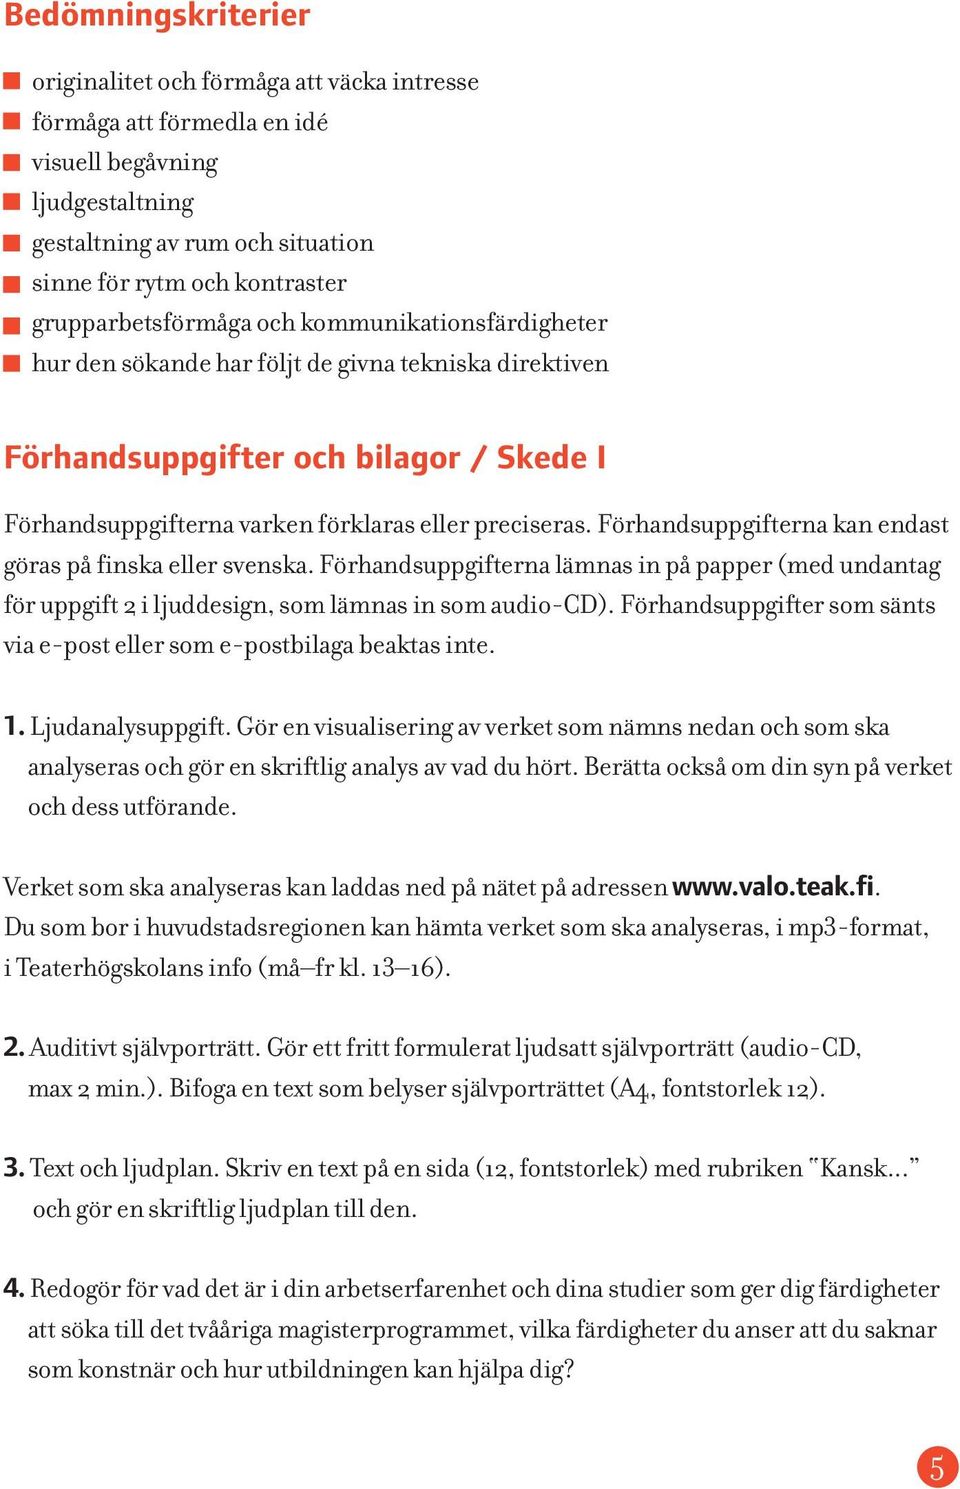 Förhandsuppgifterna kan endast göras på finska eller svenska. Förhandsuppgifterna lämnas in på papper (med undantag för uppgift 2 i ljuddesign, som lämnas in som audio-cd).